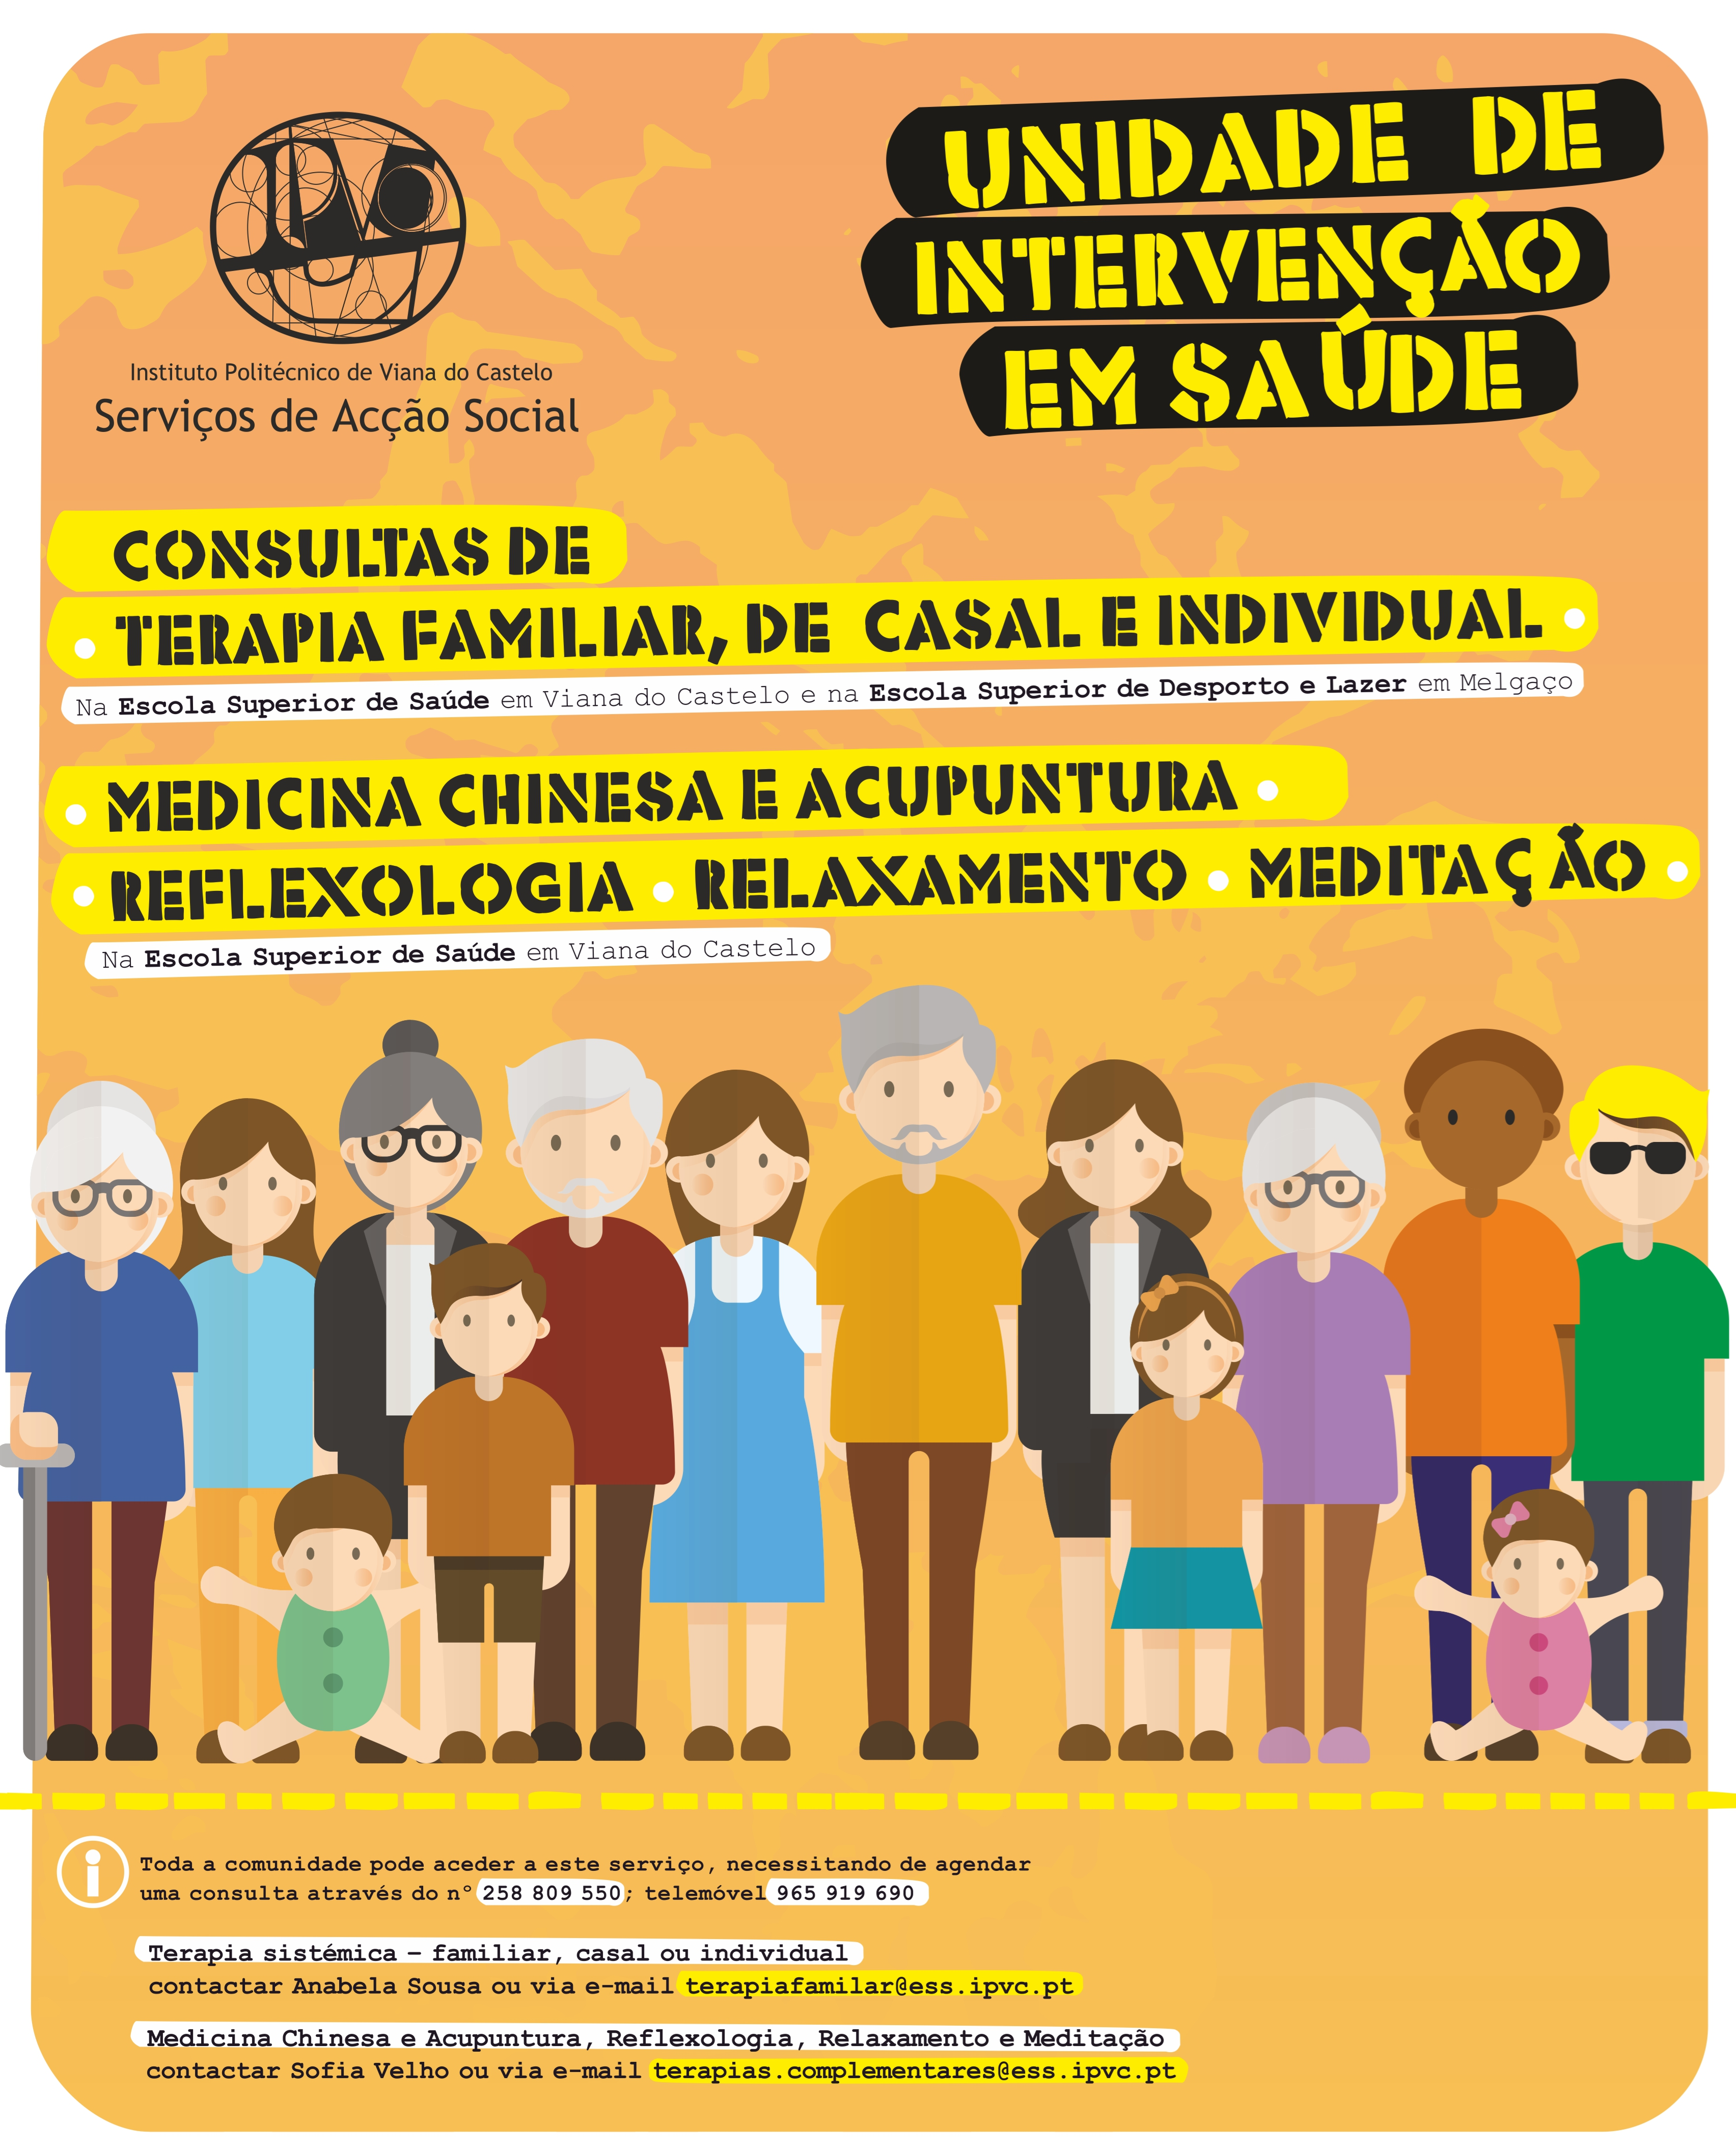 (Português) Unidade de Intervenção em Saúde